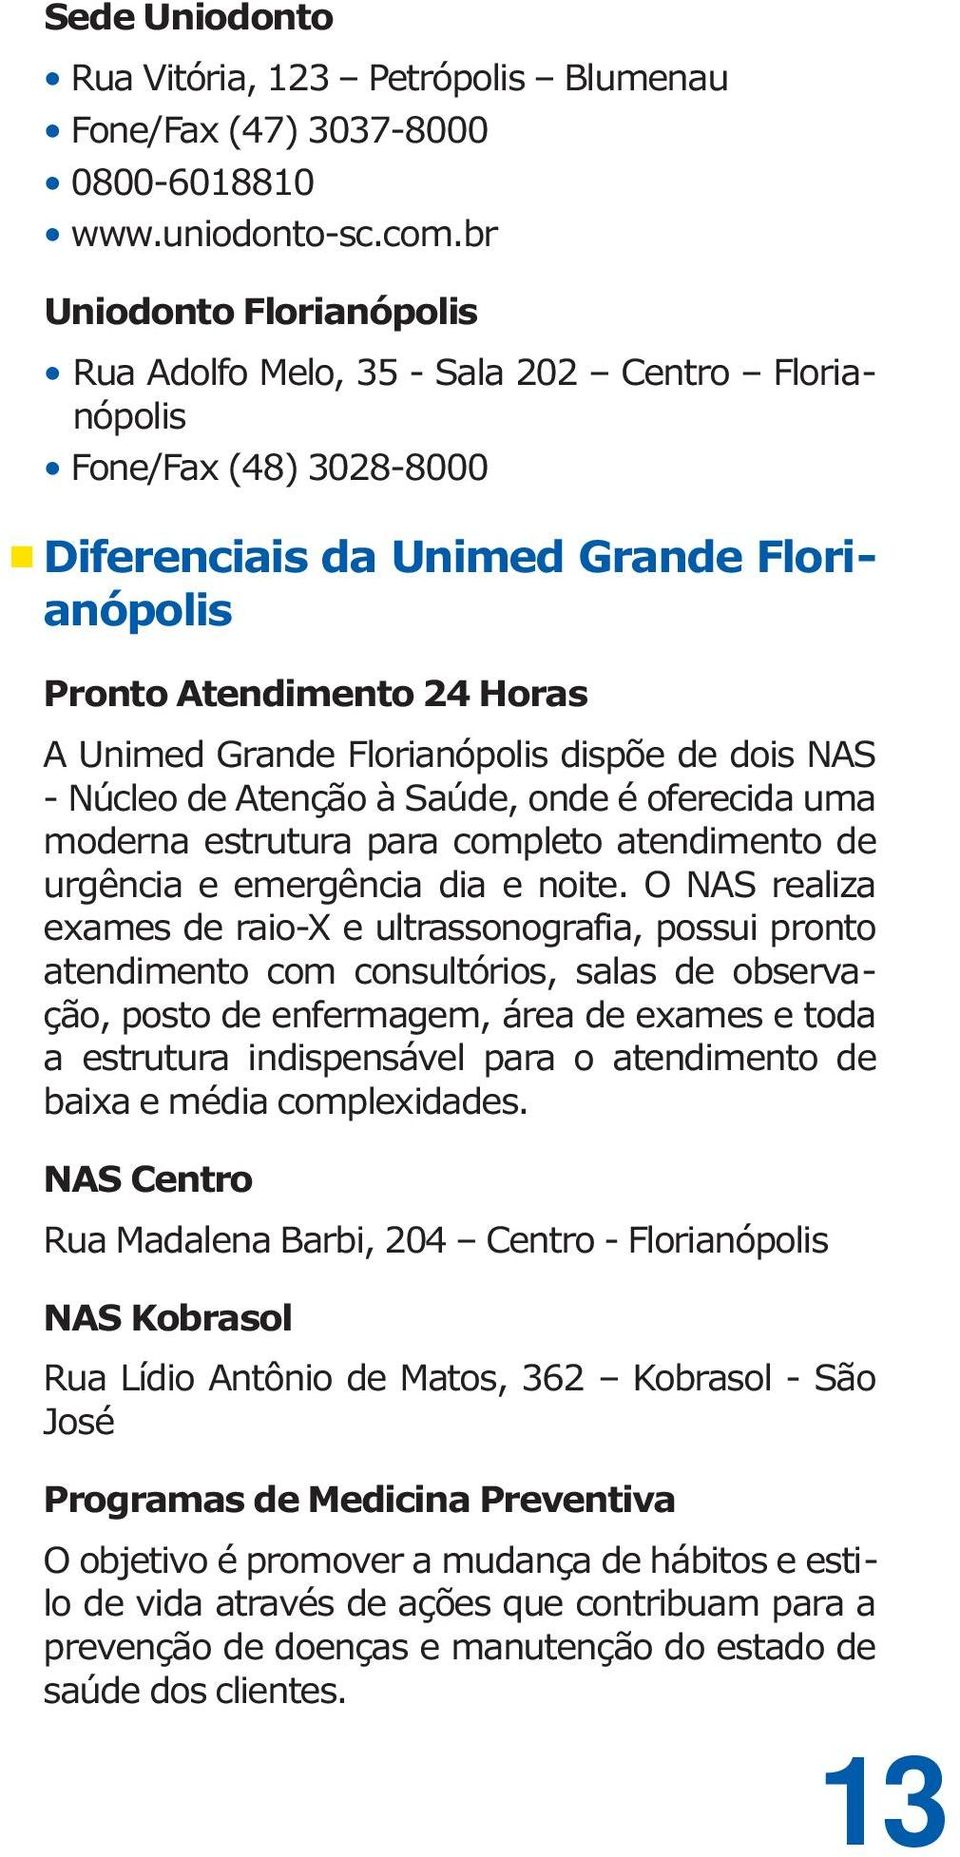 Florianópolis dispõe de dois NAS - Núcleo de Atenção à Saúde, onde é oferecida uma moderna estrutura para completo atendimento de urgência e emergência dia e noite.